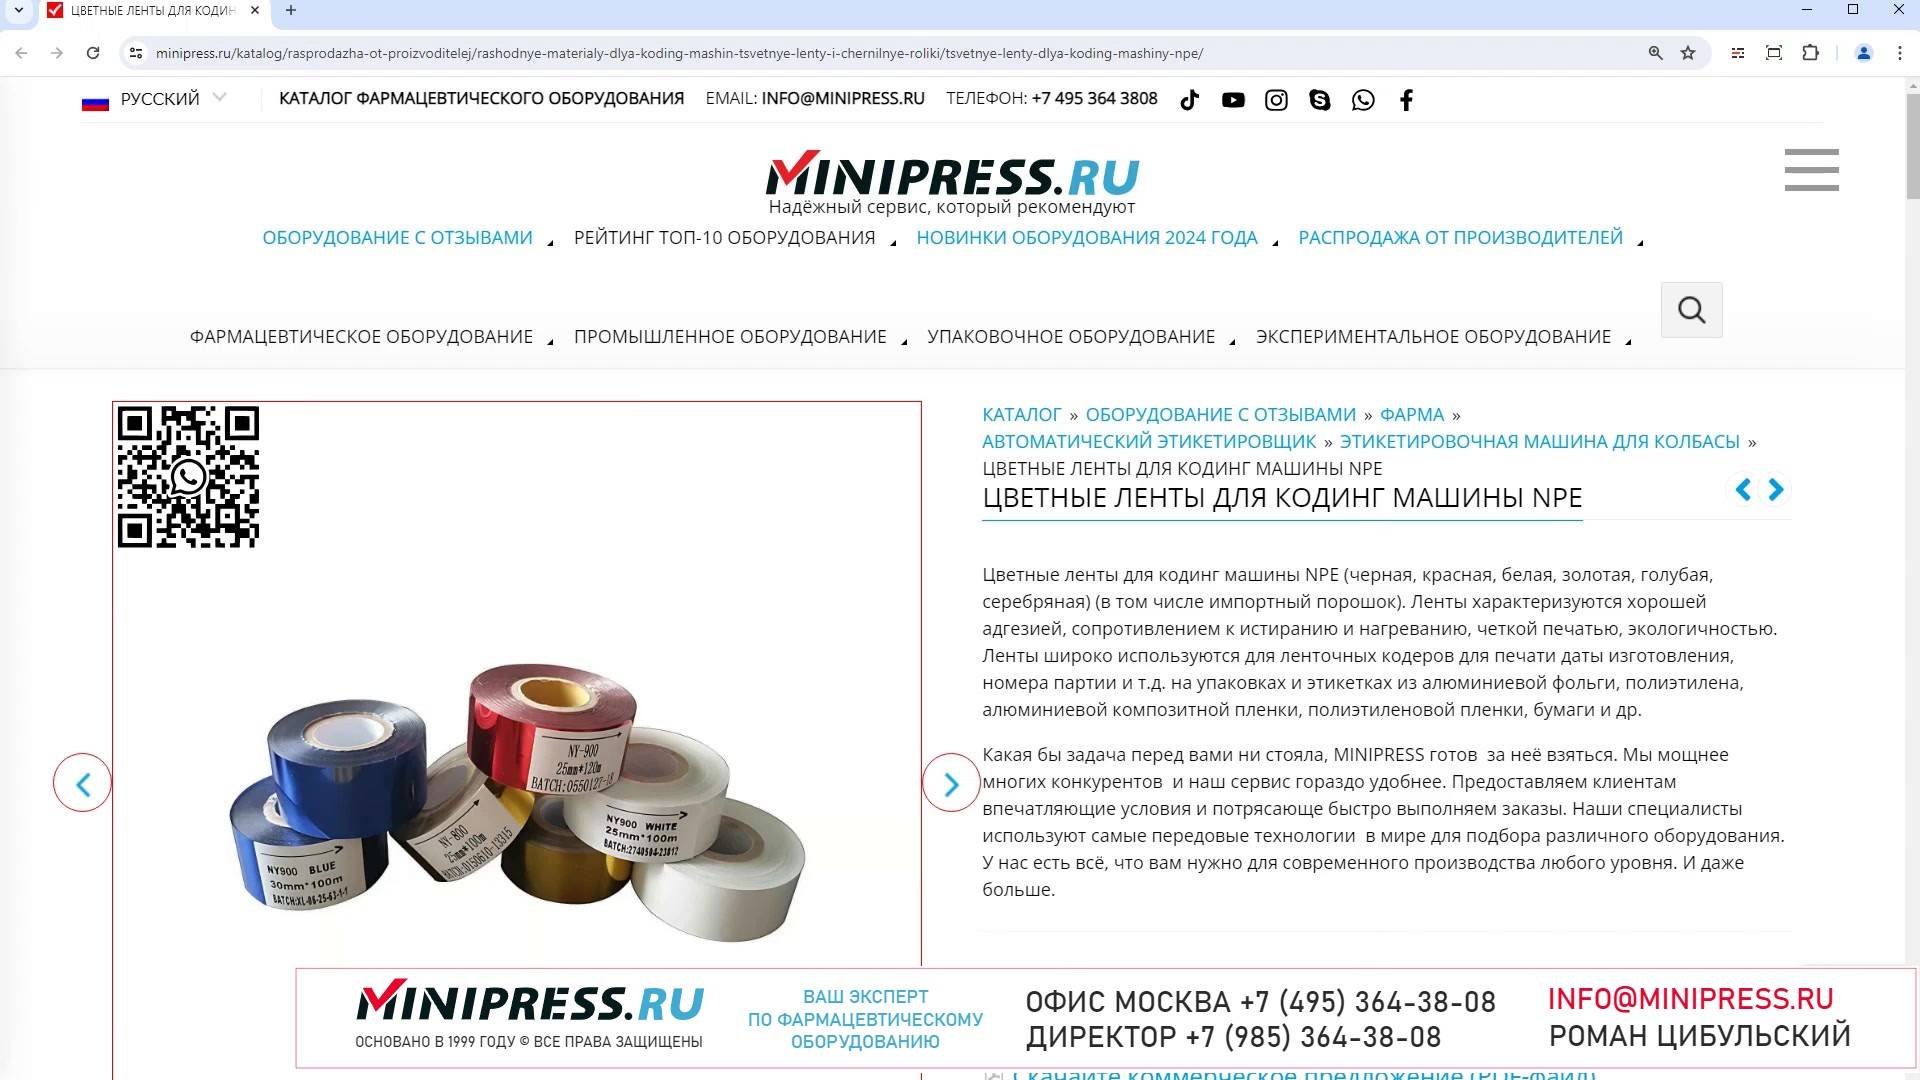 Minipress.ru Цветные ленты для кодинг машины NPE